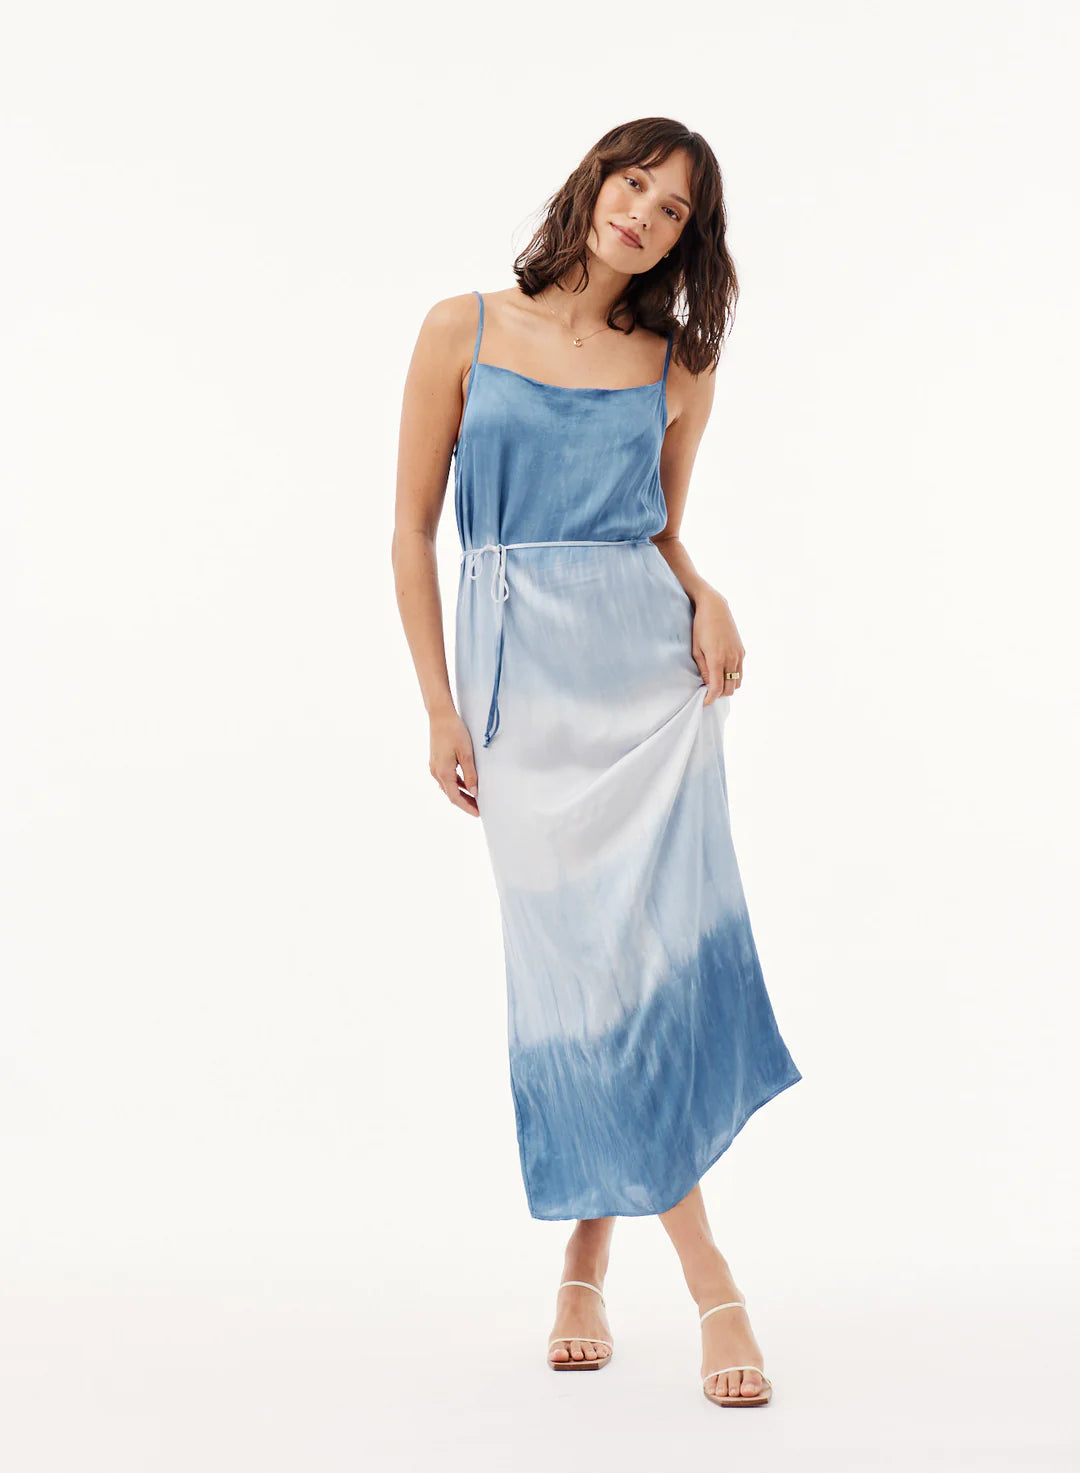 Cowl Neck Tie-Dye Maxi Dress in Mykonos Blue Stripe Dye by Bella Dahl